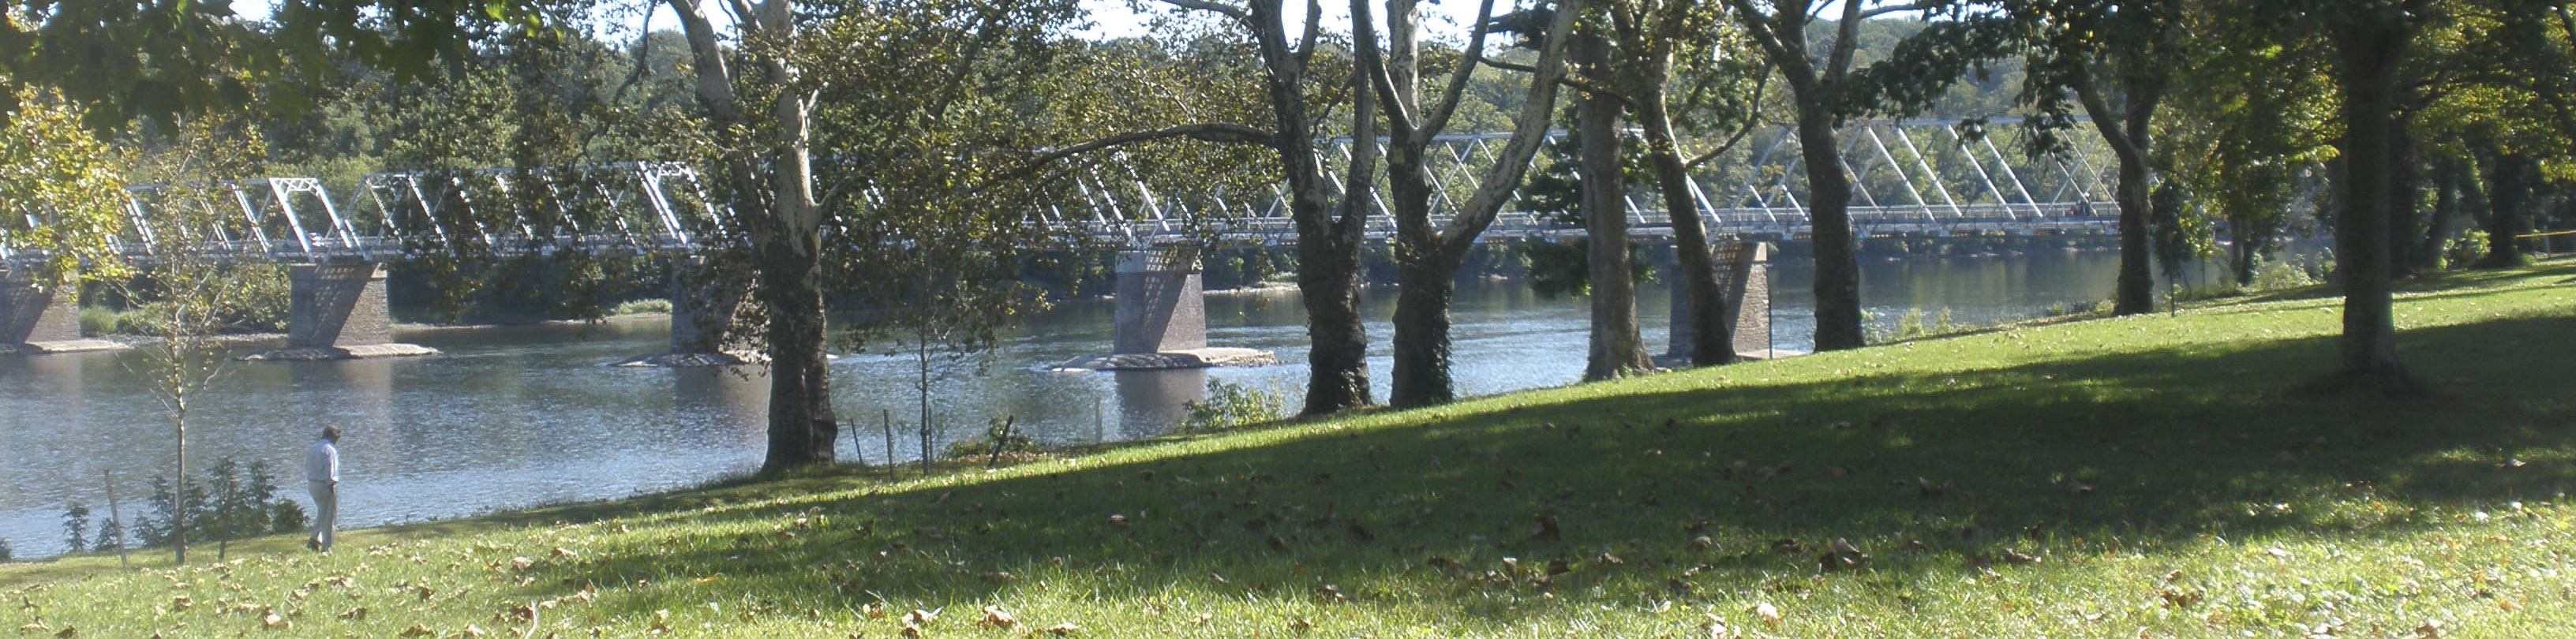 View of the narrow Deleware River bridge at Washington Crossing, PA